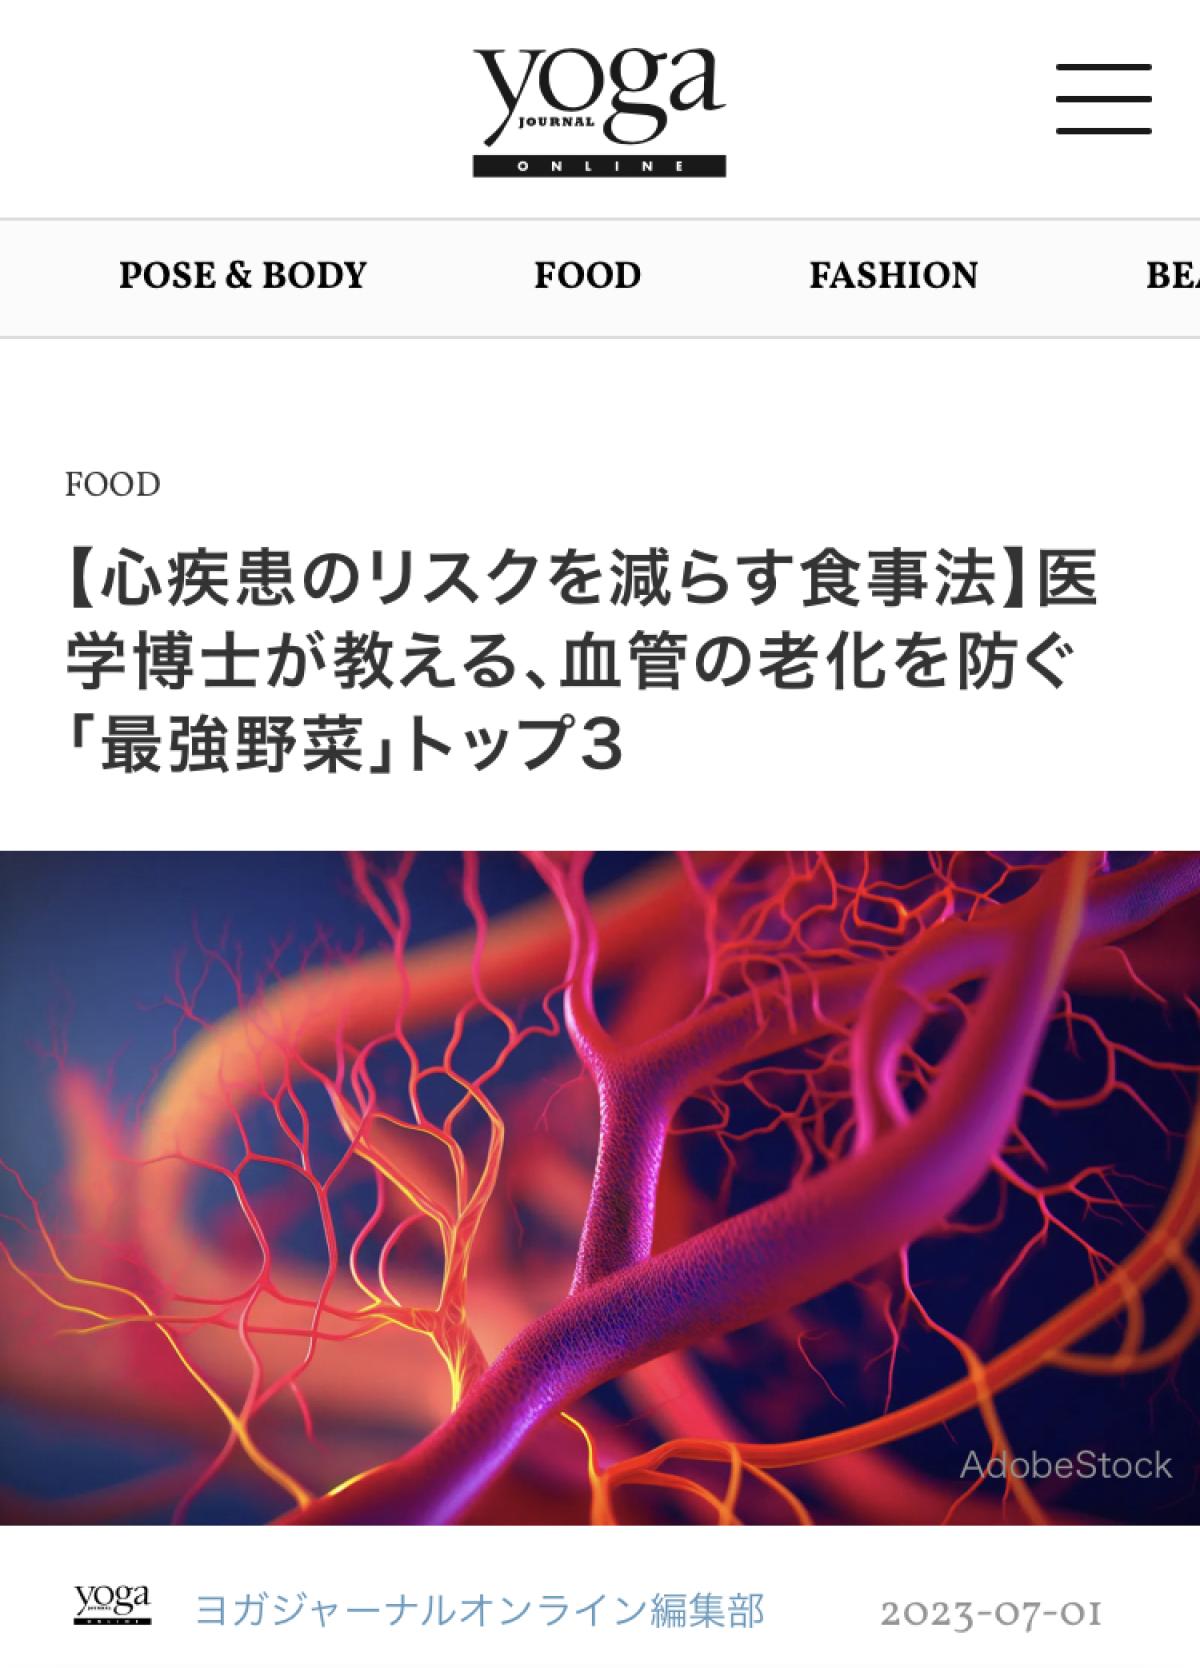 ヨガジャーナルオンラインにて日本栄養コンシェルジュ協会 代表理事 岩崎 真宏 が監修した記事「【心疾患のリスクを減らす食事法】医学博士が教える、血管の老化を防ぐ「最強野菜」トップ3」が掲載されました！